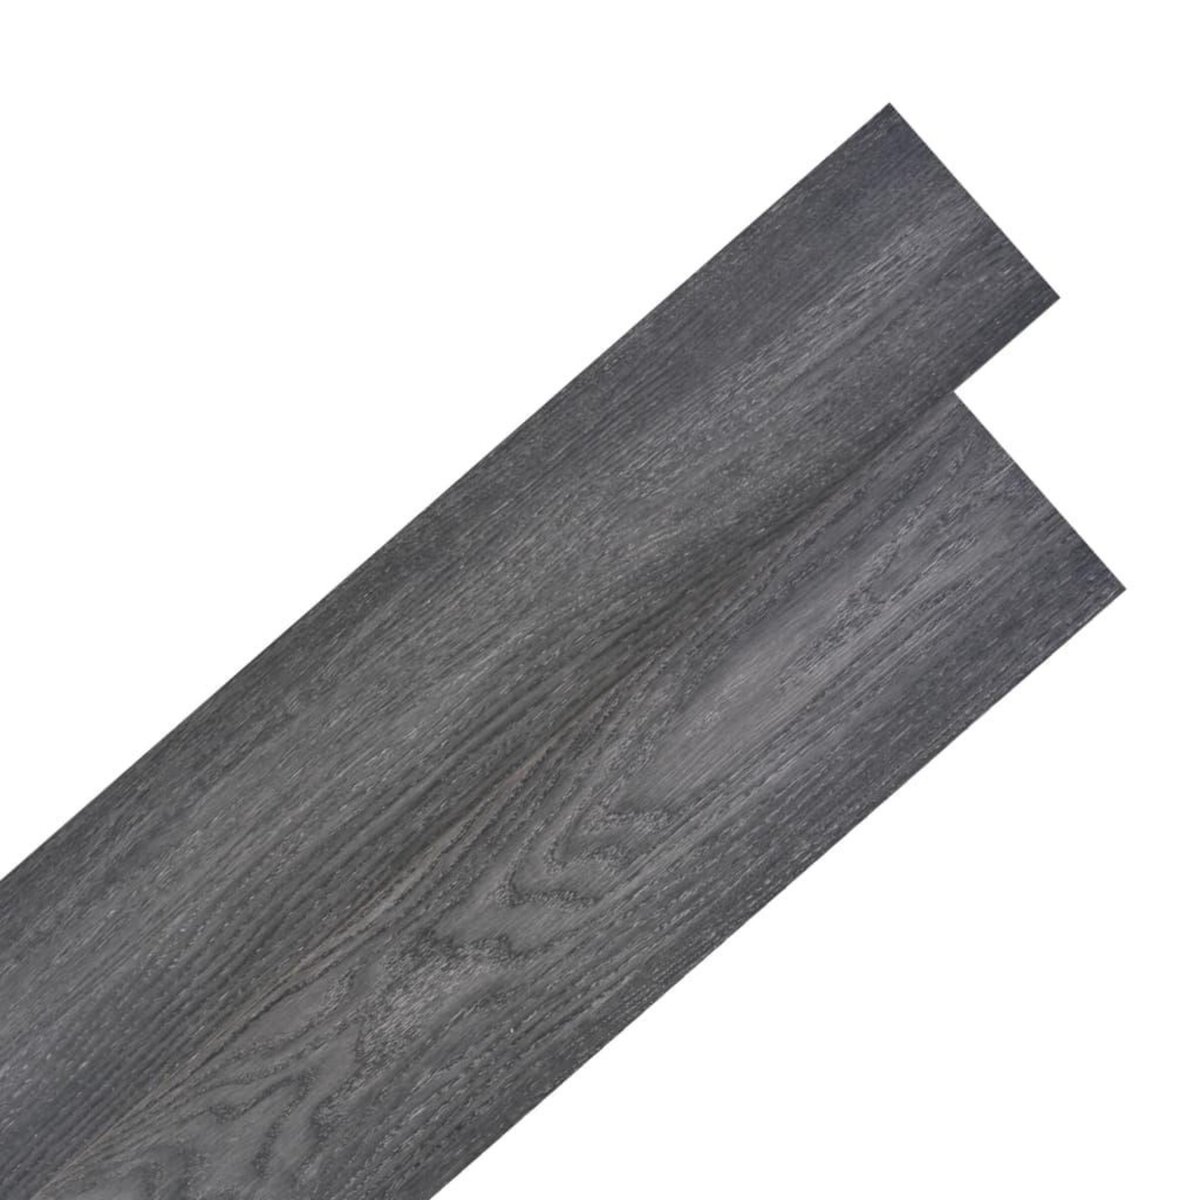 VIDAXL Planche de plancher PVC autoadhesif 5,02 m^2 2 mm Noir et blanc